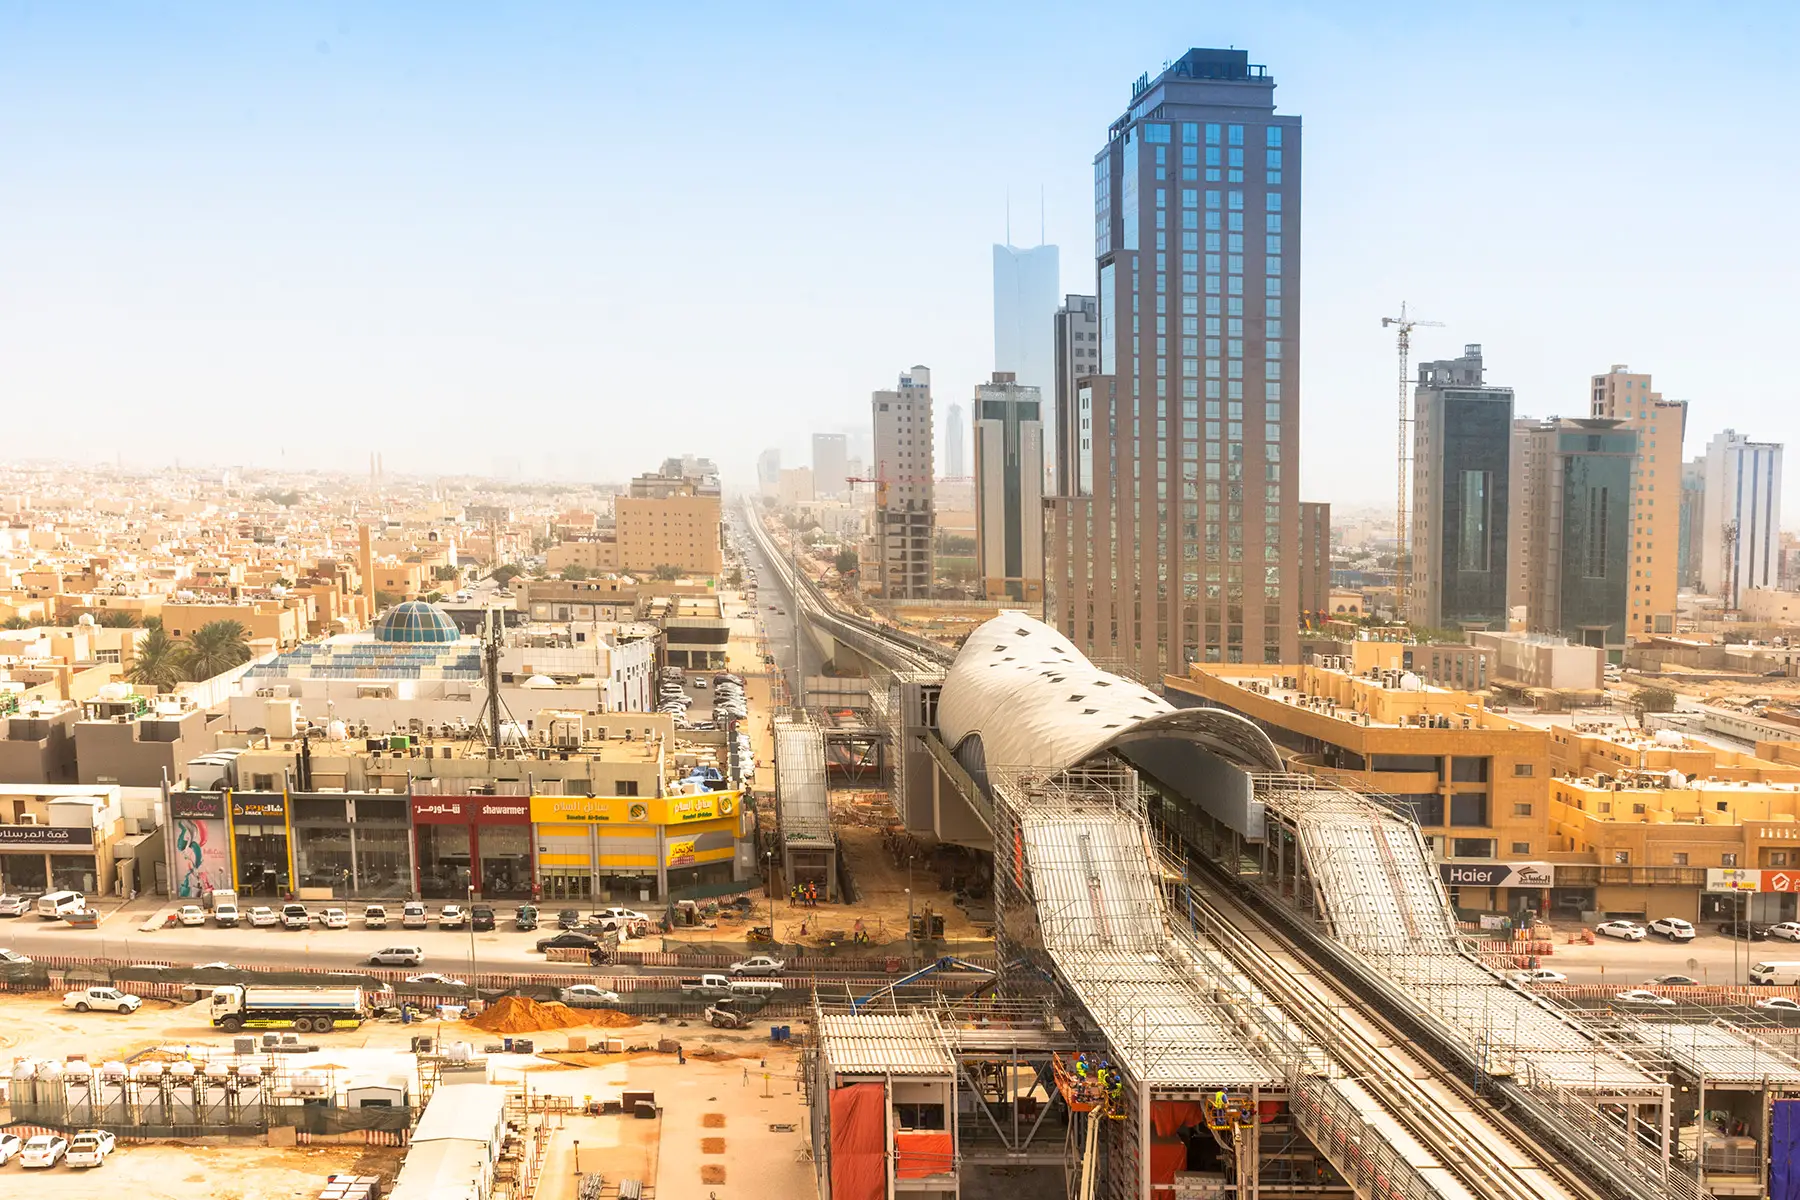 A Riyadh Metro station under construction